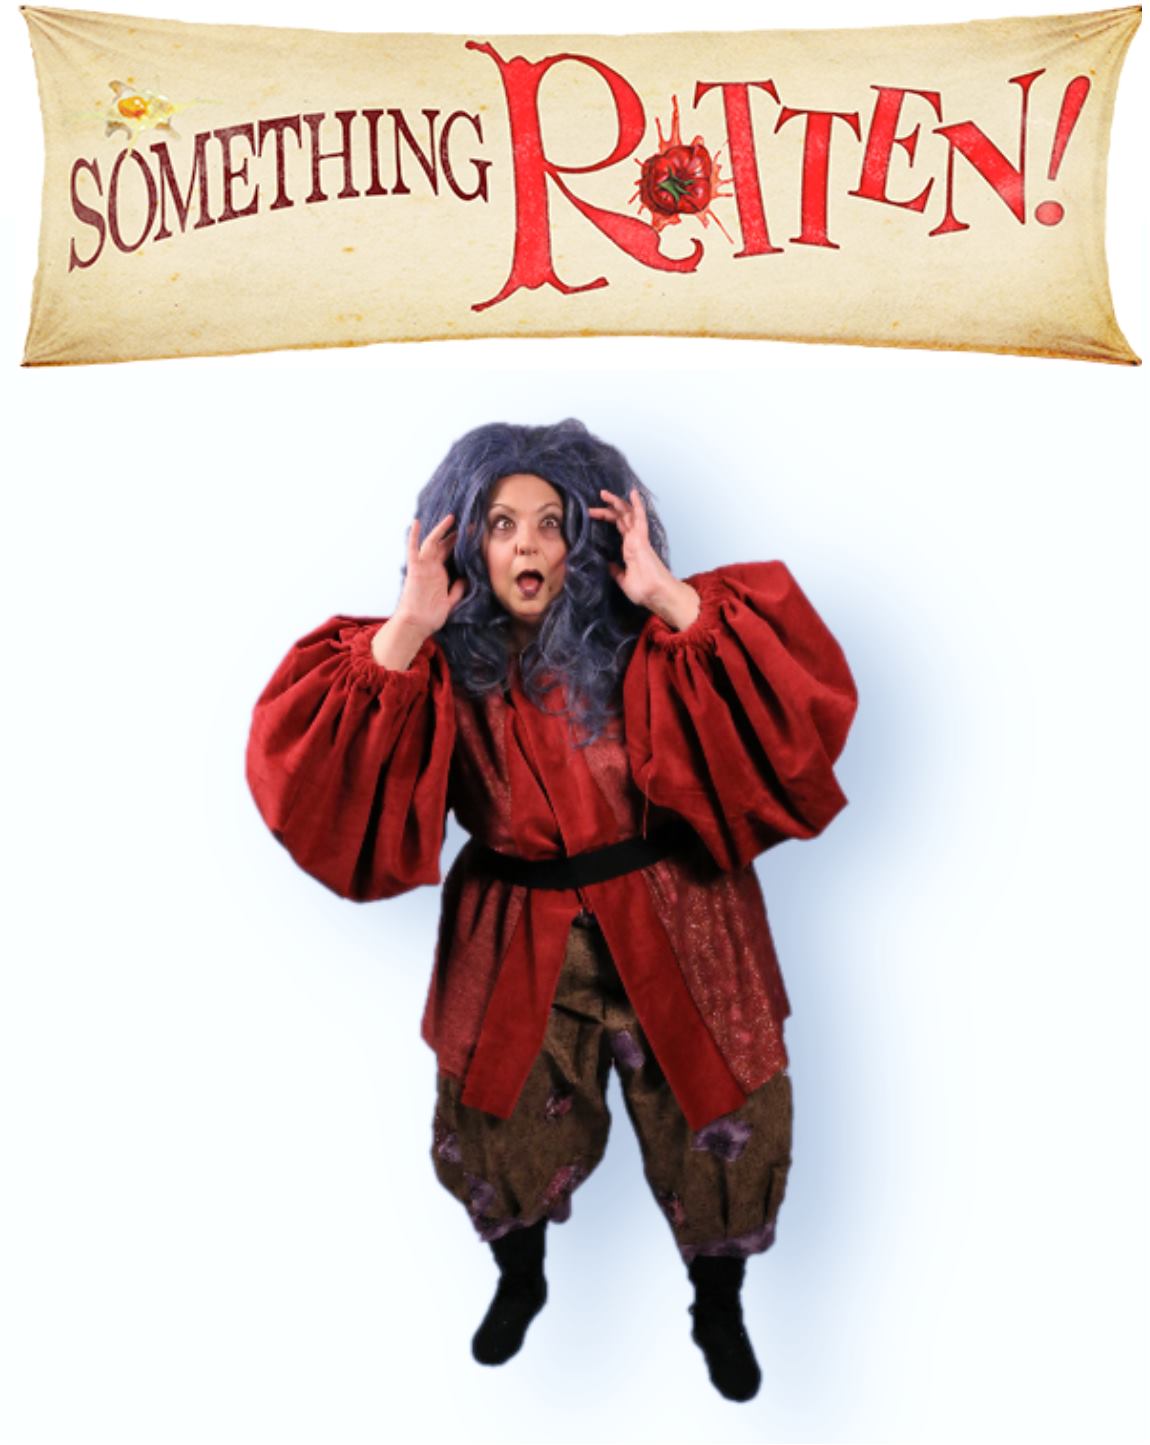 “Something Rotten!” presented by Theatre Nebula featuring Denise Tamburrino as Nostradamus.